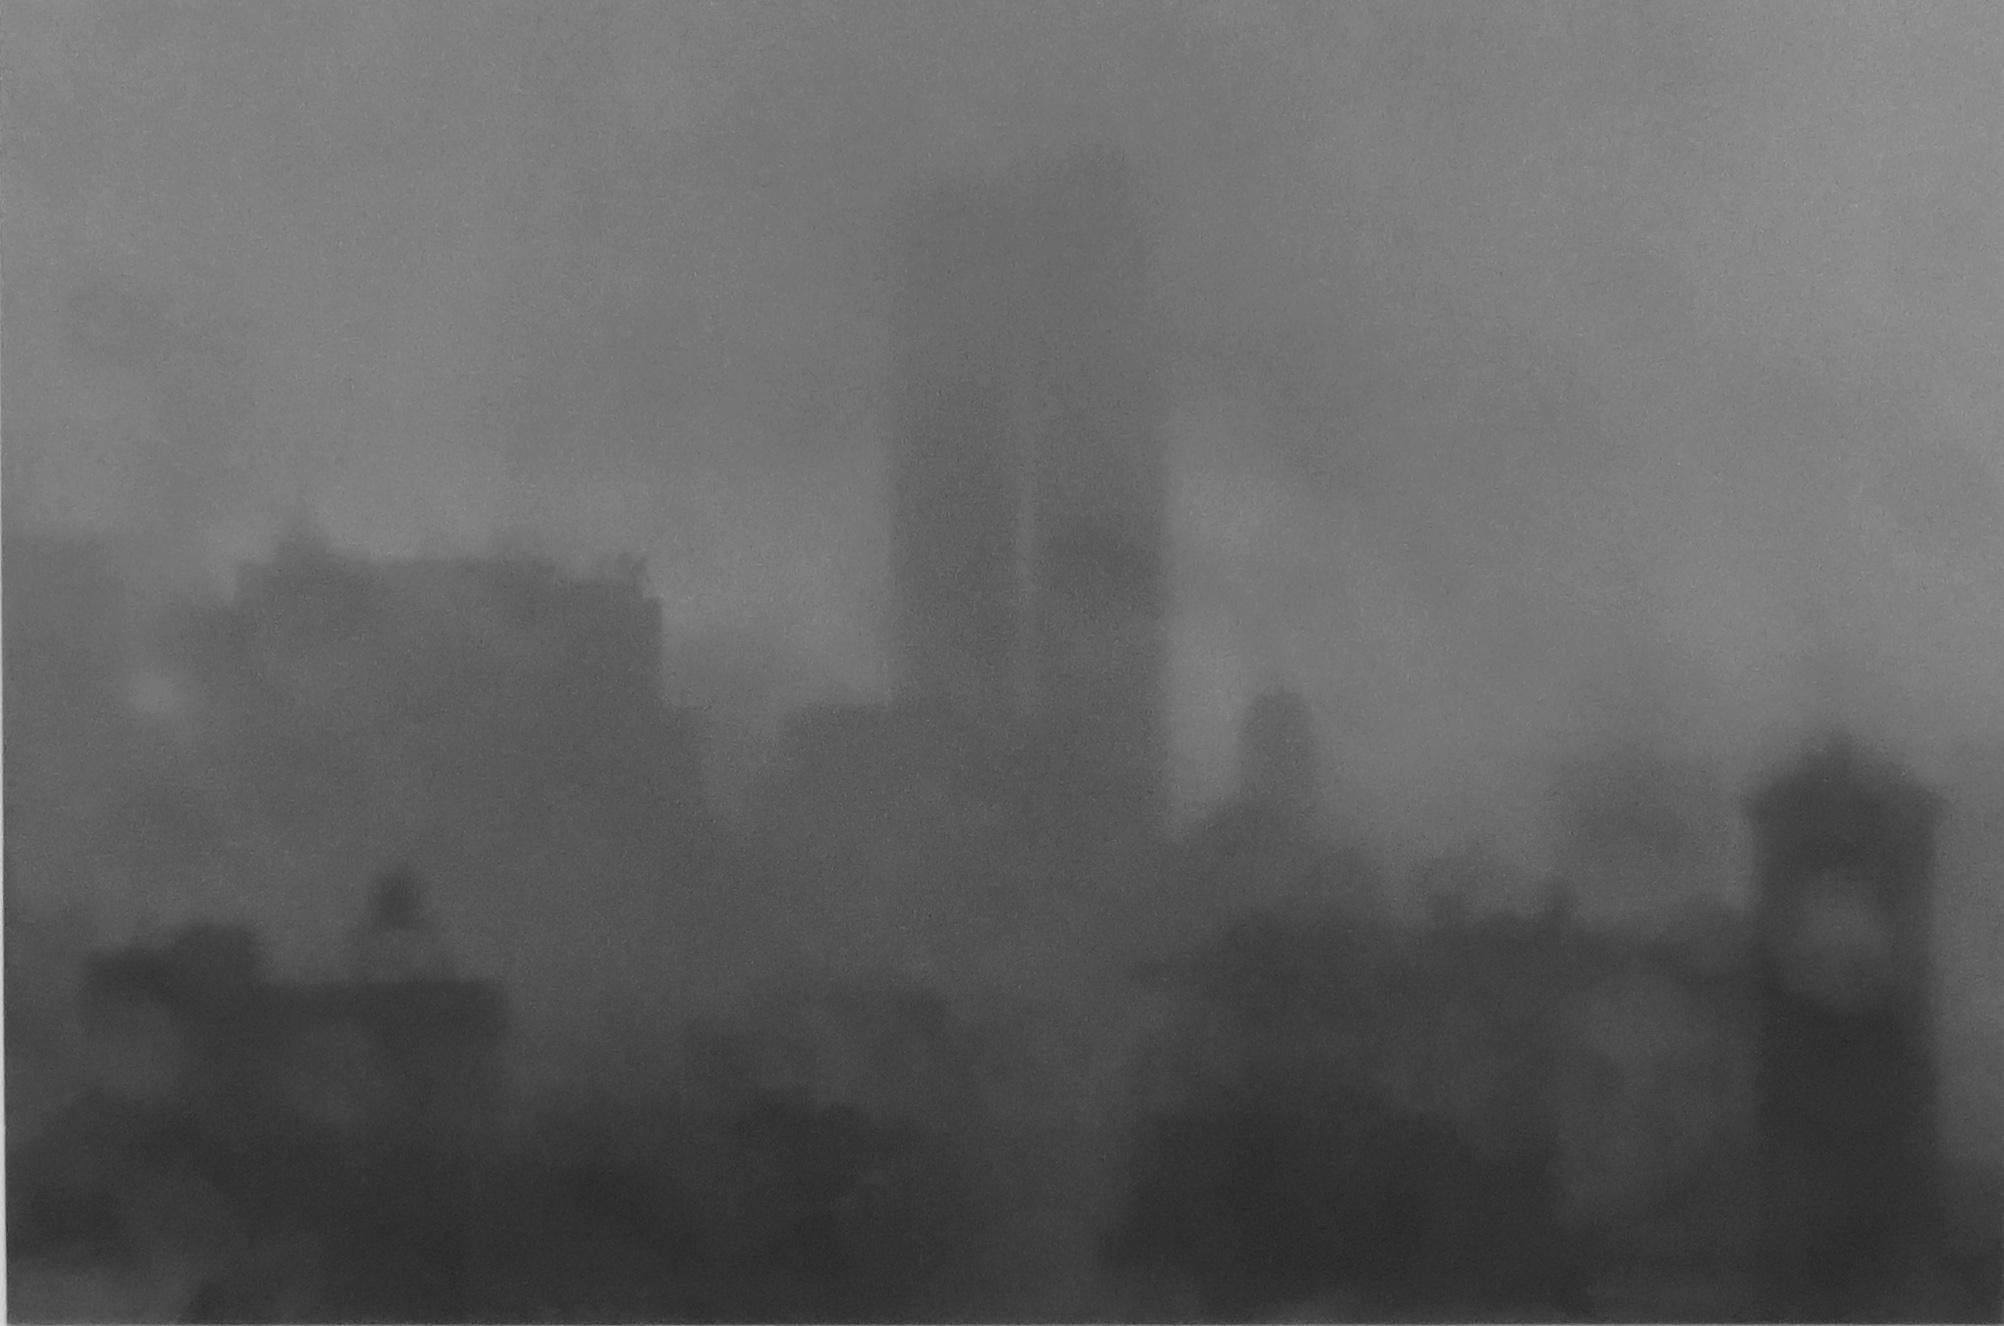 Wolf von dem Bussche Black and White Photograph – Washington Square mit Trade Center Towers II